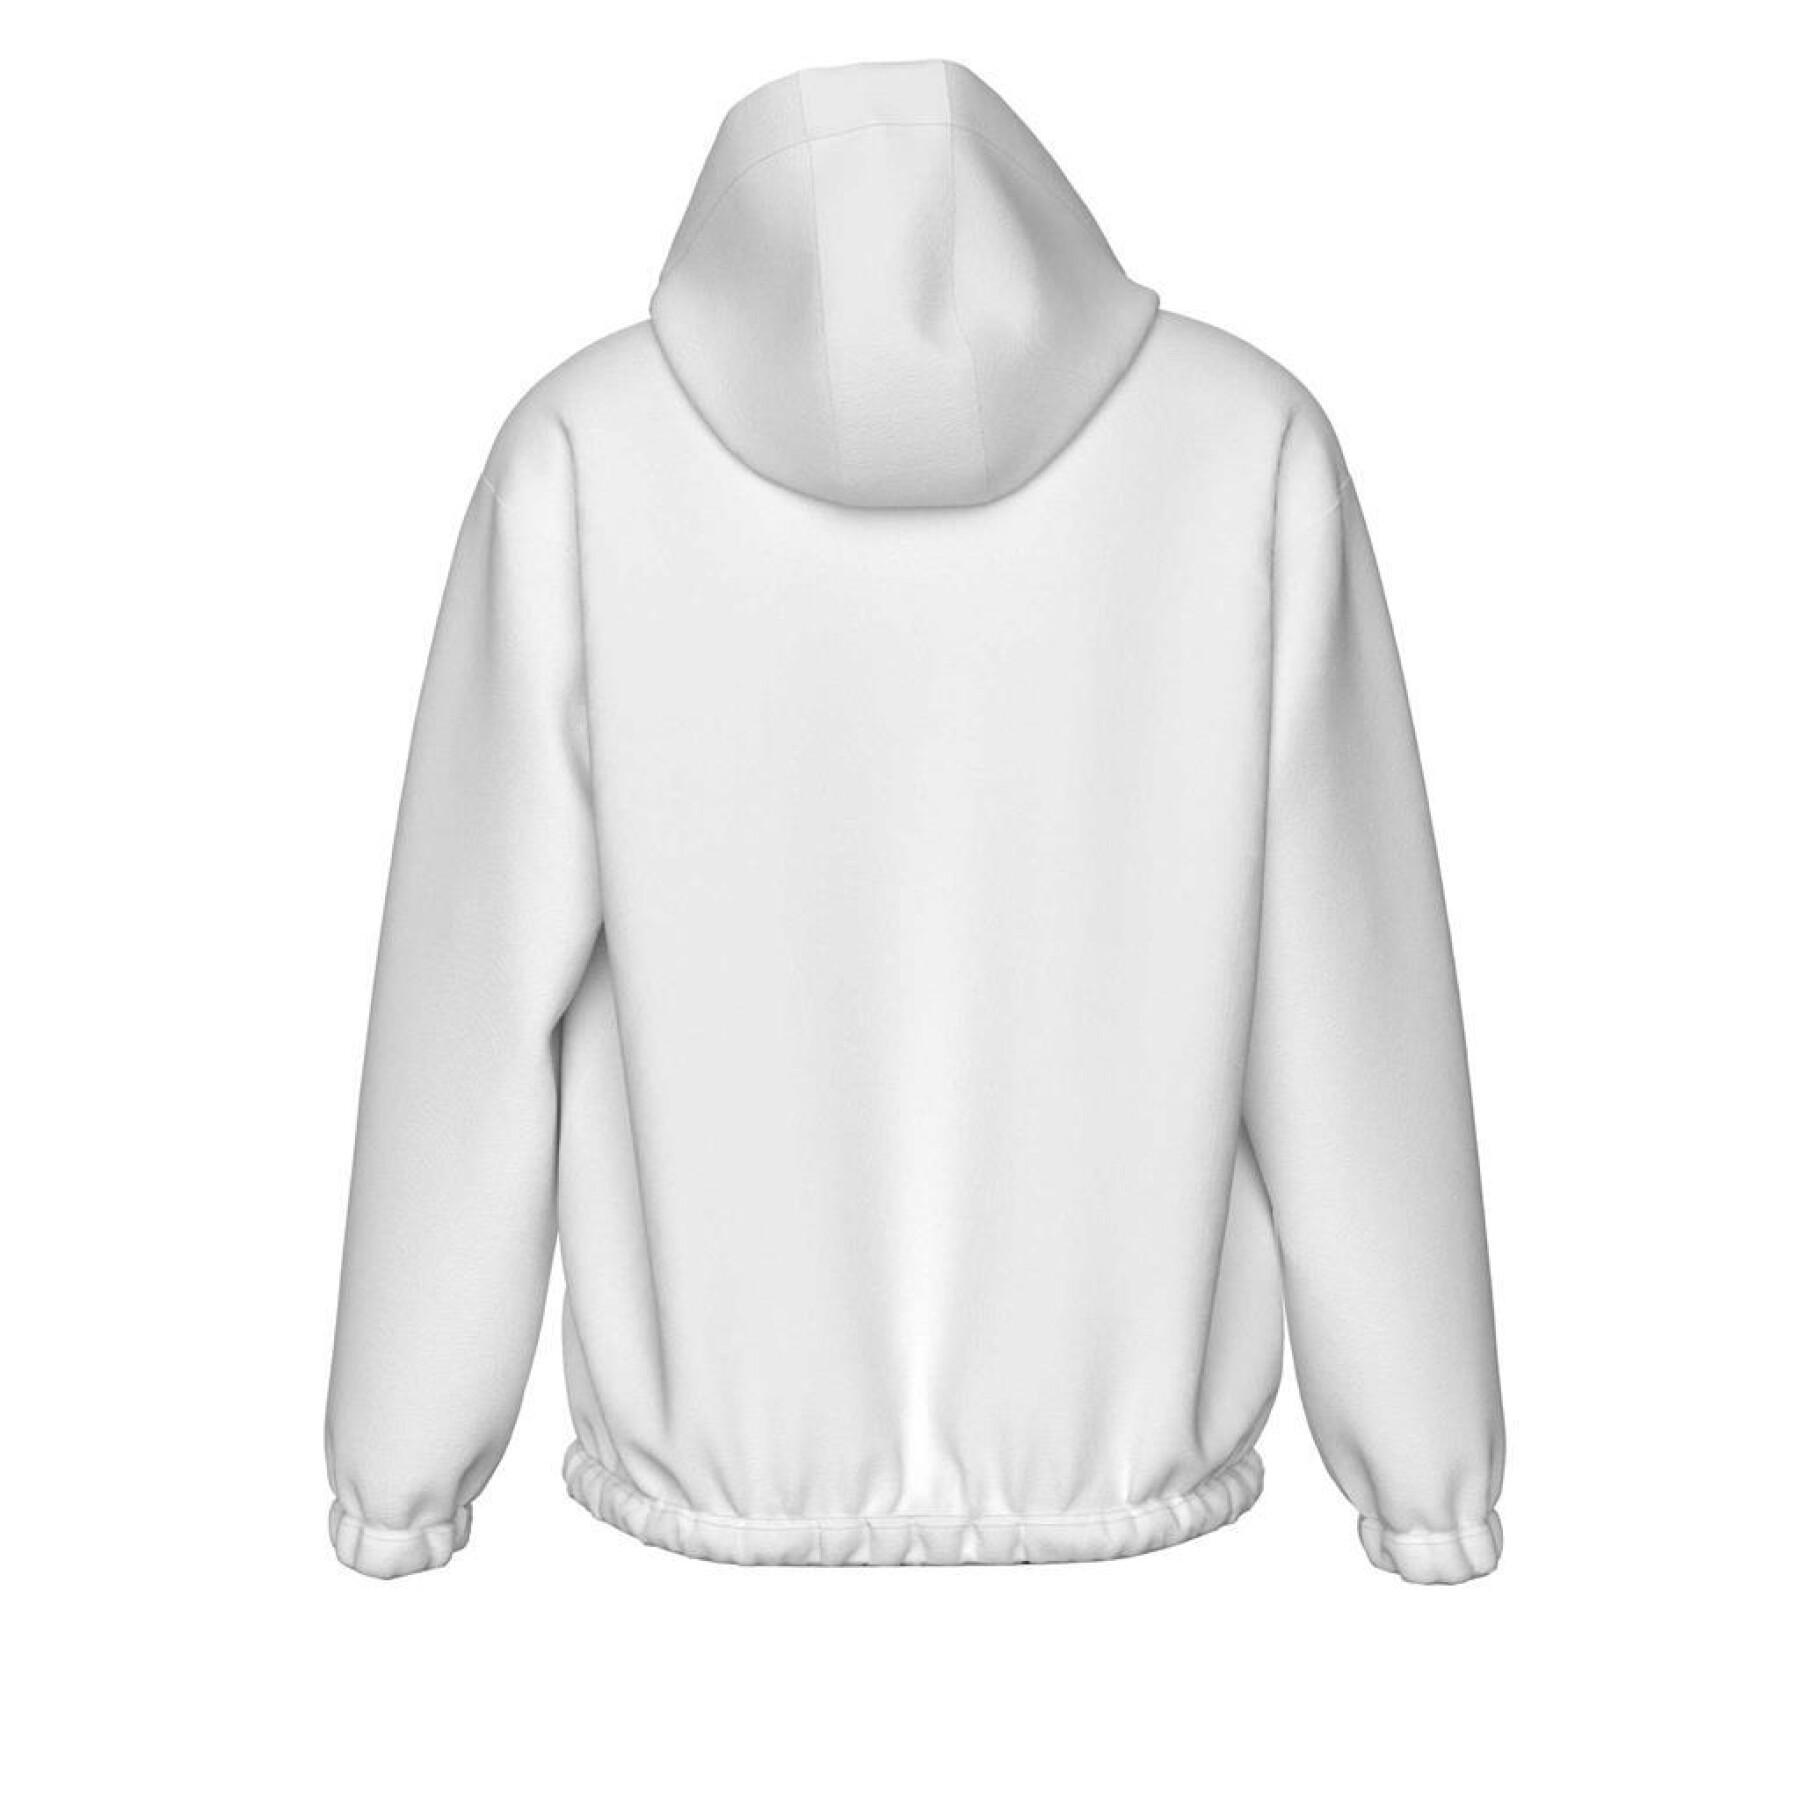 Girl's's fleece hoodie Errea Essential 14